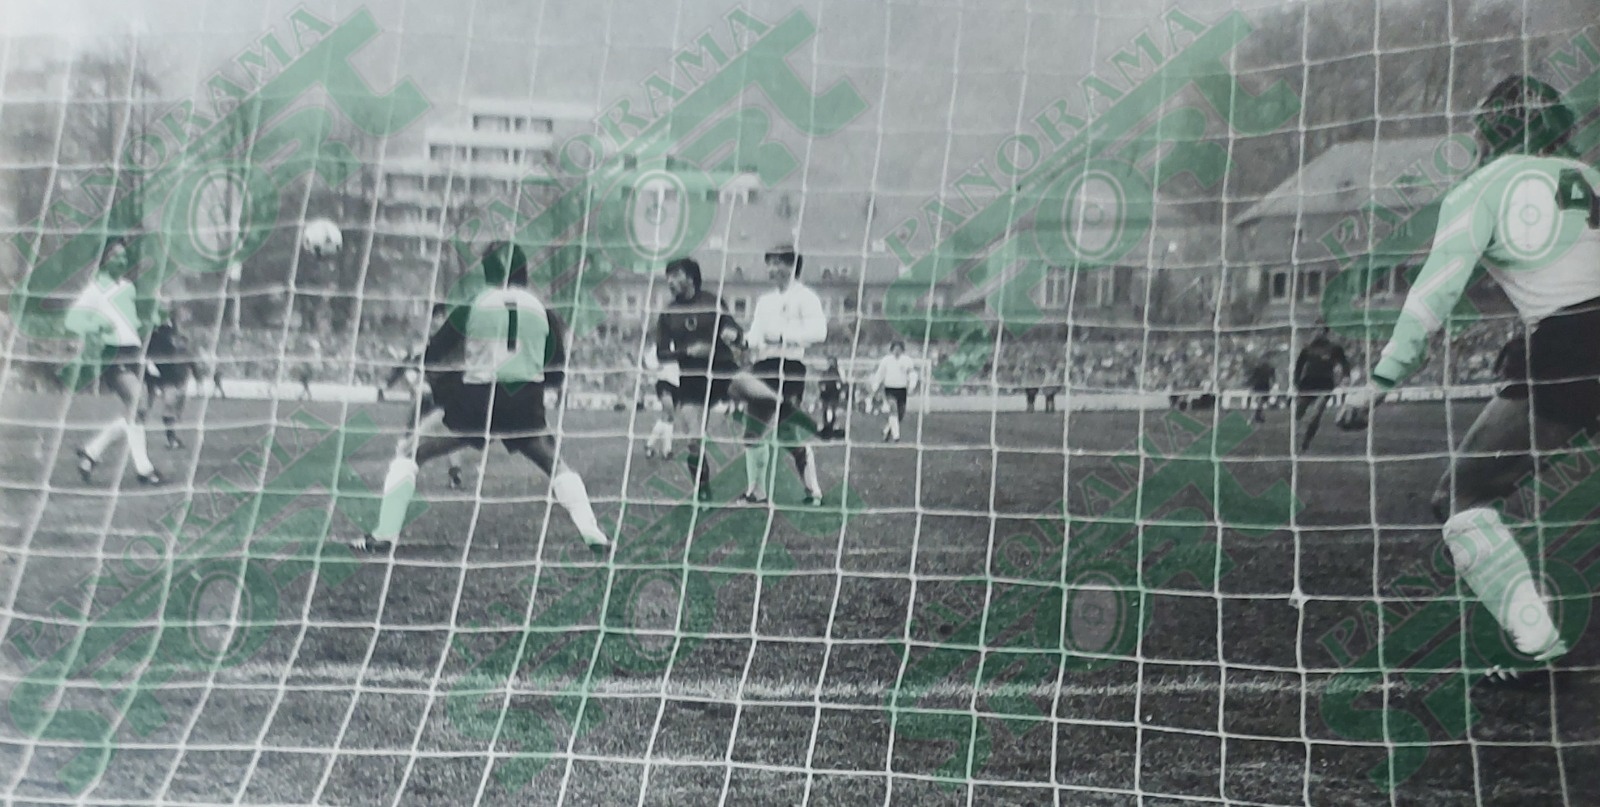 * 19 NËNTOR 1983. RF Gjermane – Shqipëria 1-1. Përsëri një tjetër foto e rrallë nga ndeshja kulminante në Trier të Gjermanisë prej arkivit të autorit të shkrimit. Është një çast sulmi i rrezikshëm i gjermanëve.